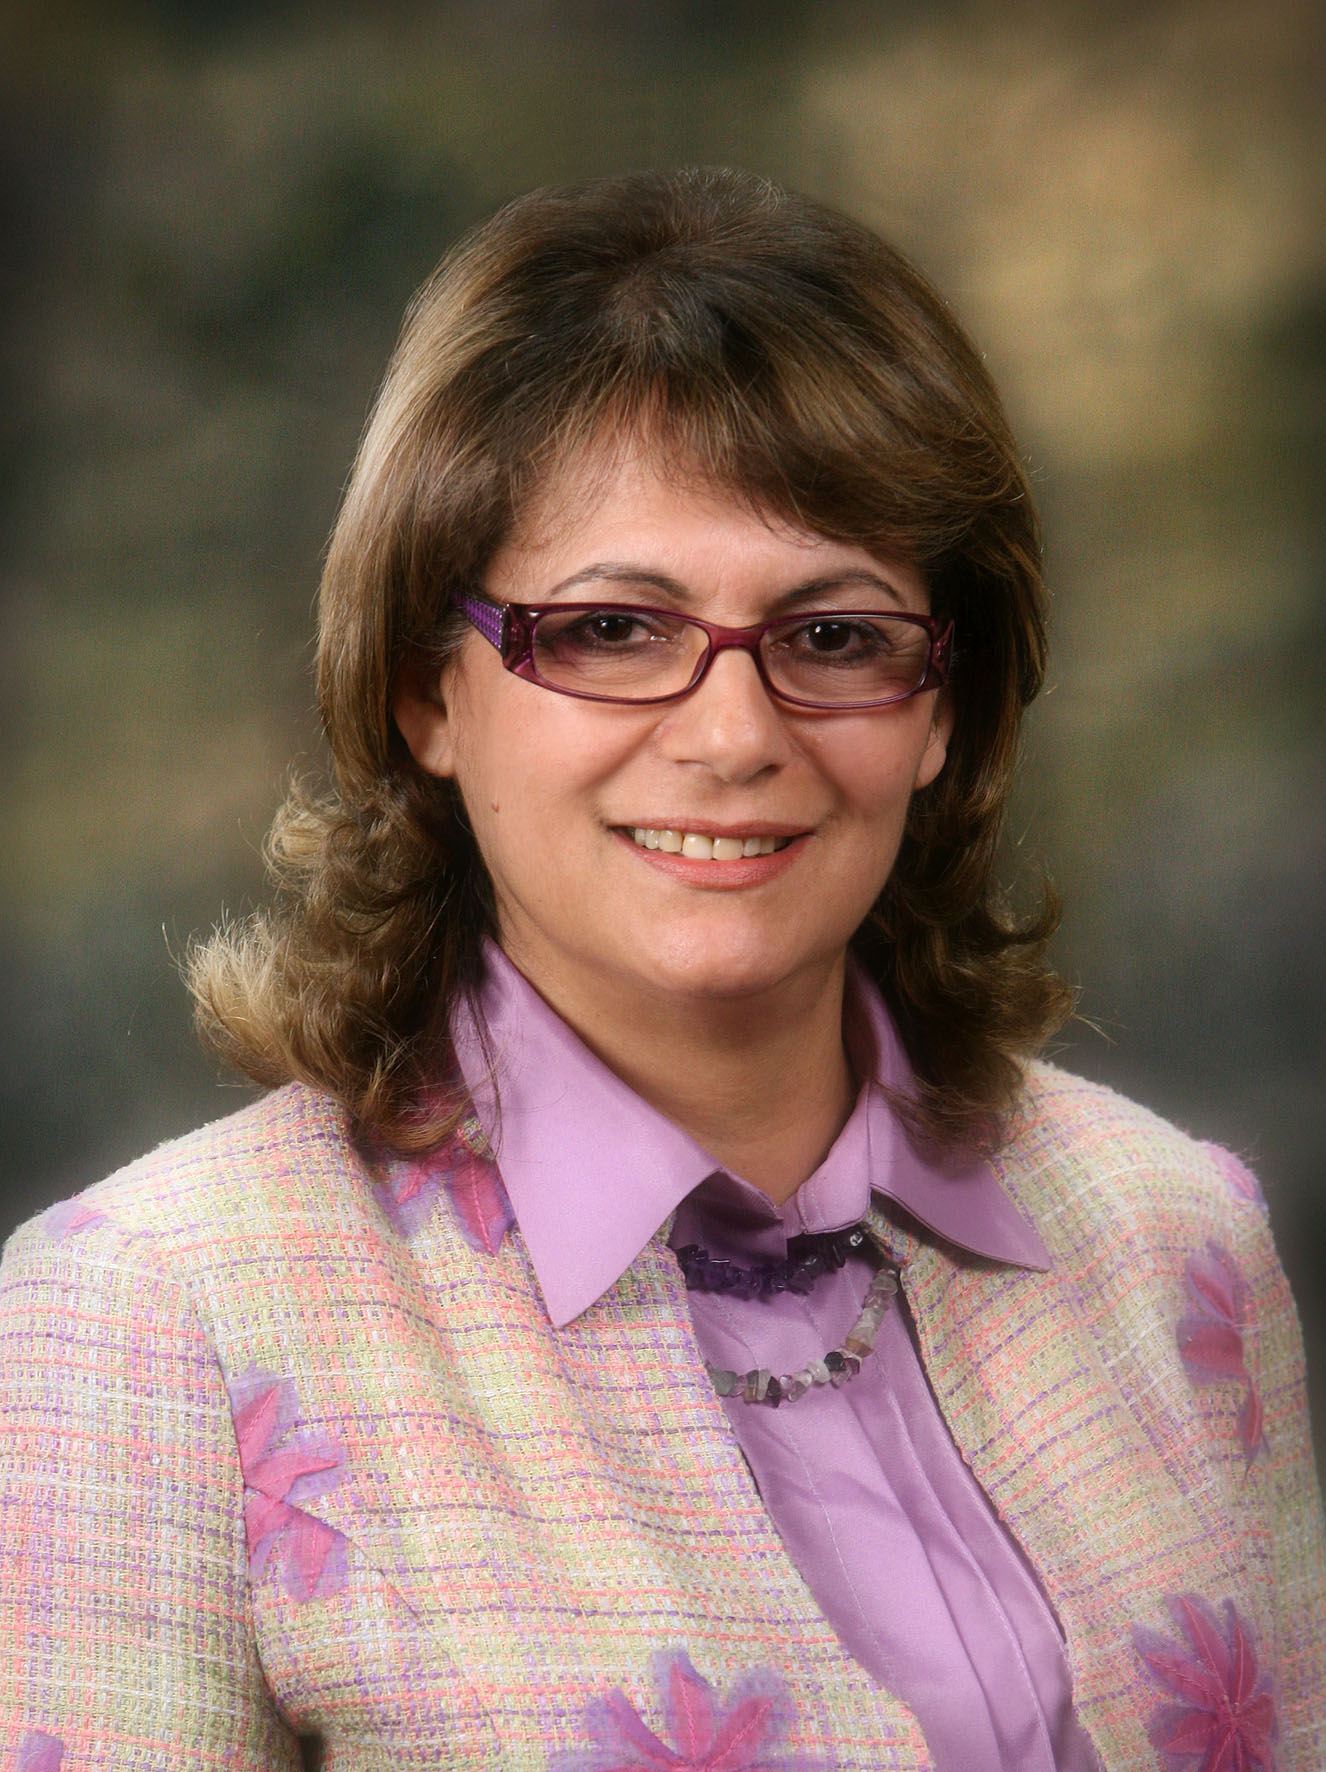 Η Βουλευτής κα Στέλλα Μισιαούλη στην 6η Σύνοδο της ΑΣΚ - 10/12/2013